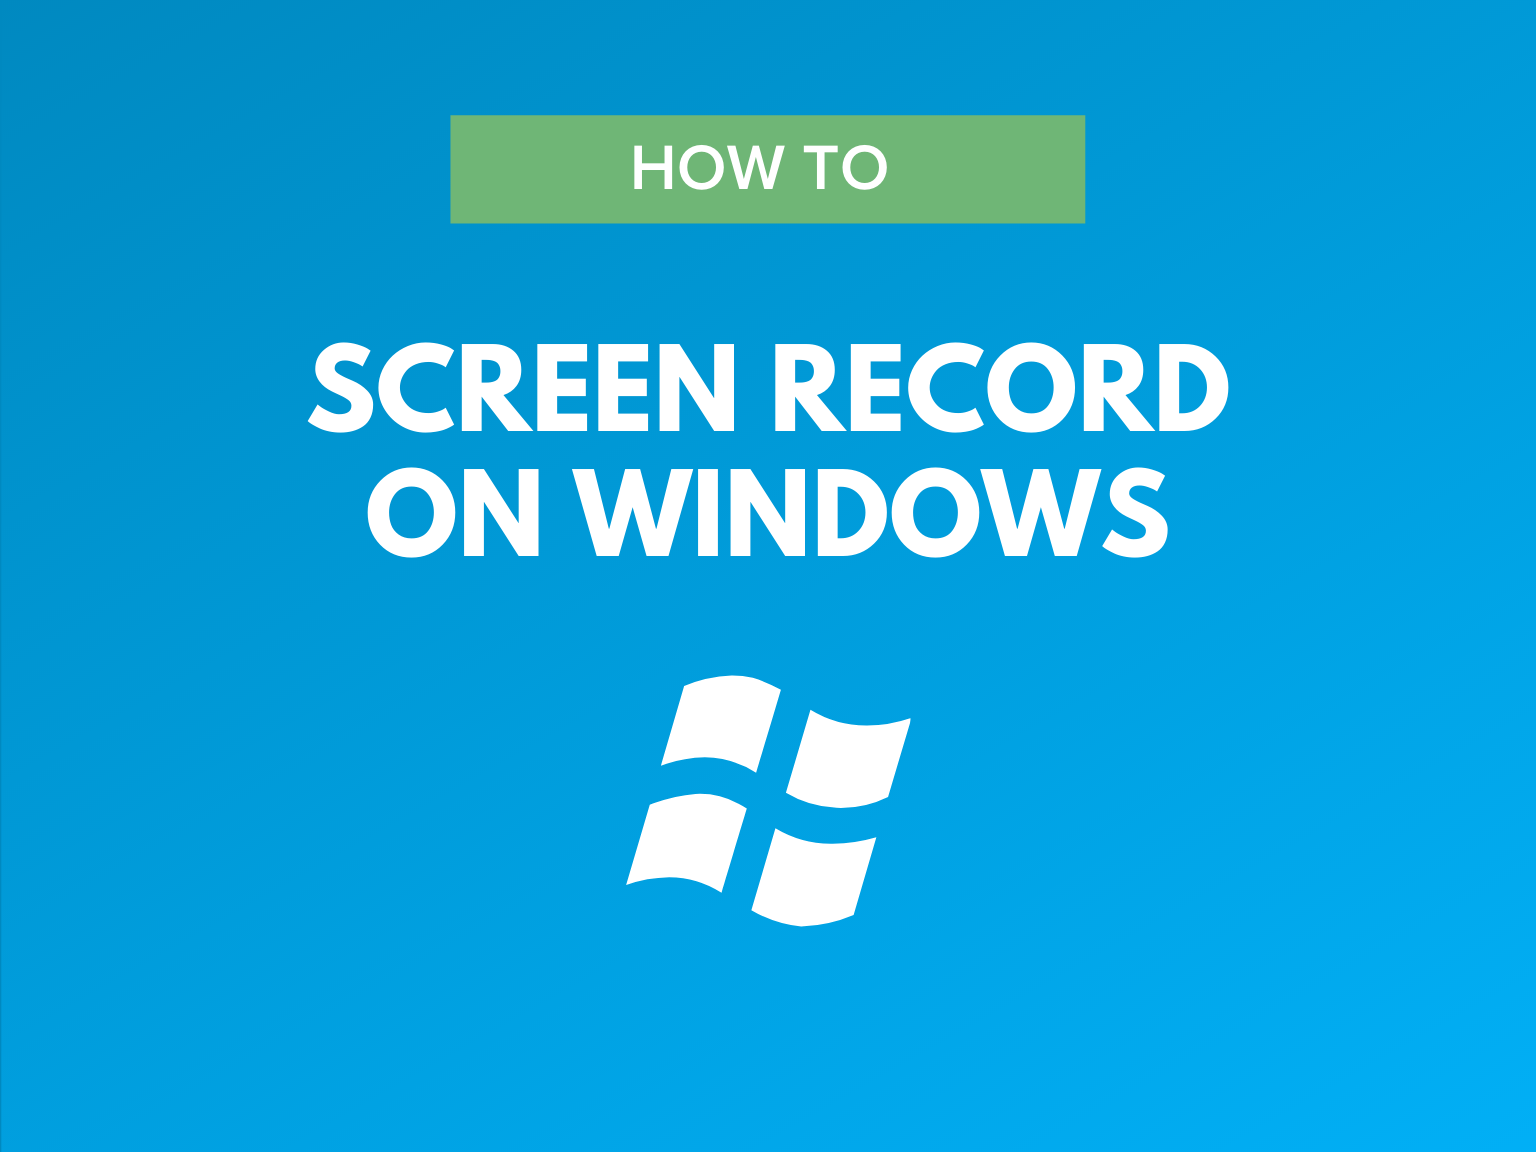 record video on windows